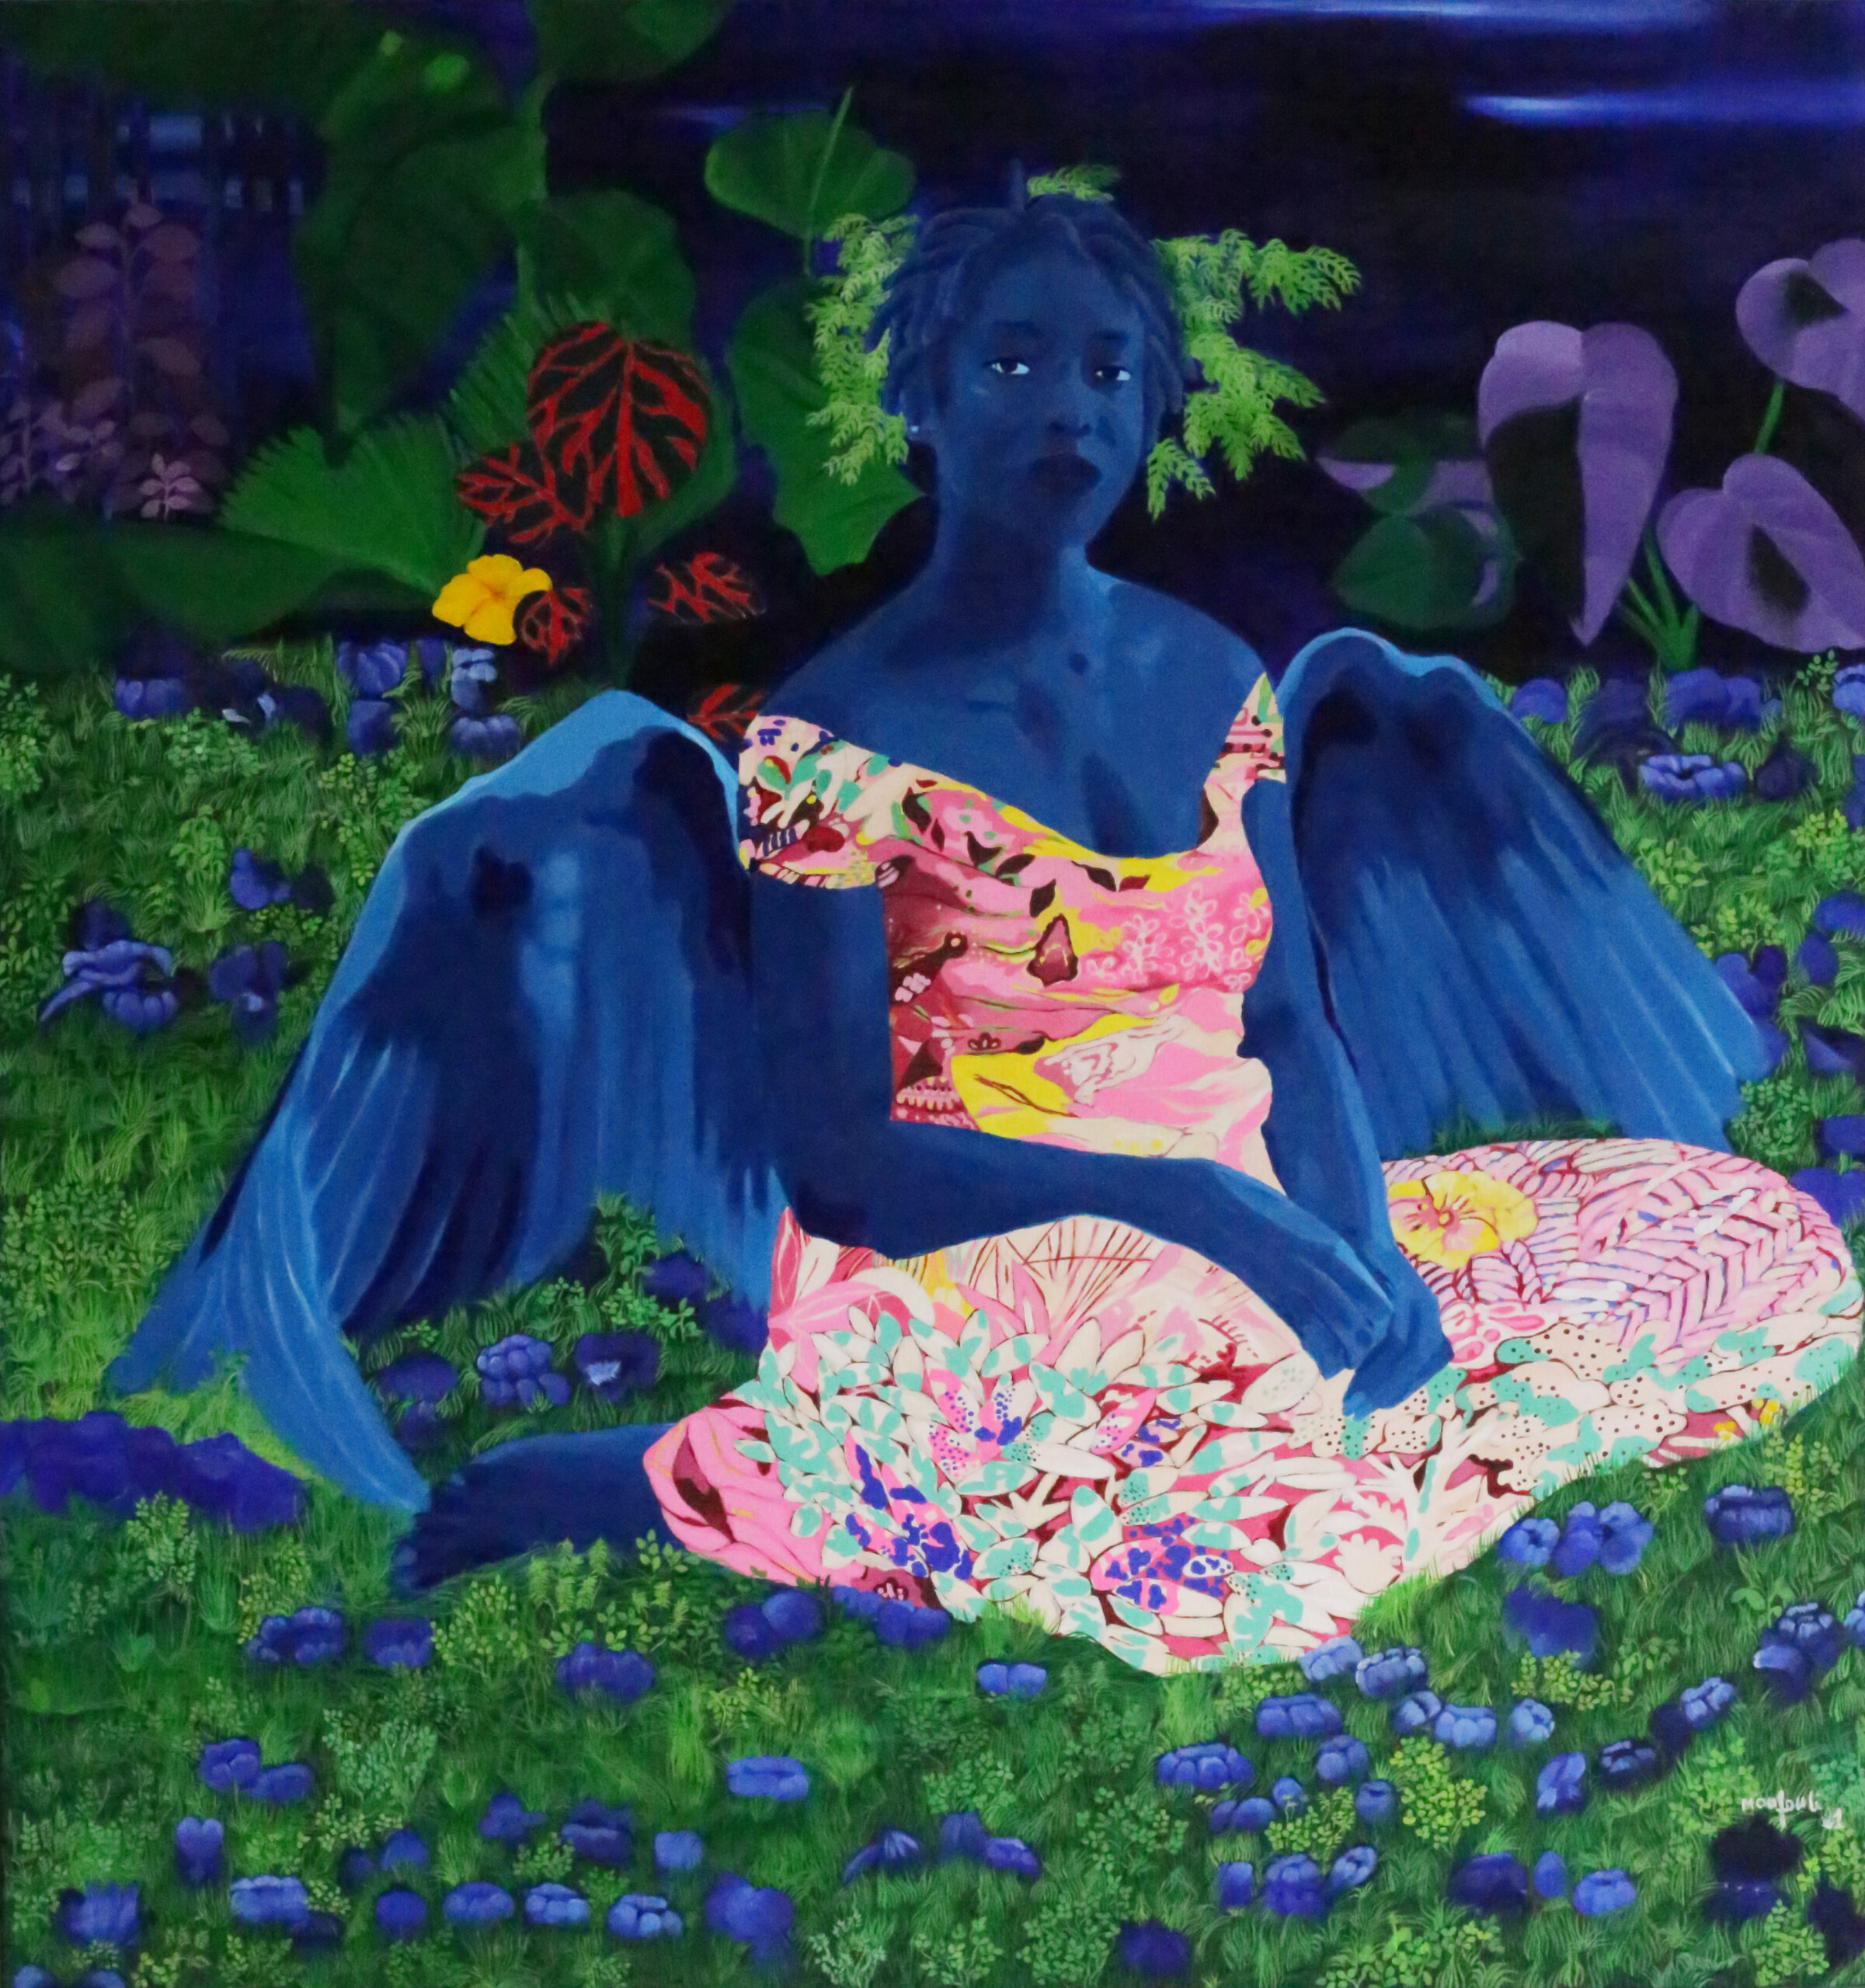 Légende de l’image
Moufouli BELLO
Anguèli, 2021
Acrylique sur toile
160 x 150 cm